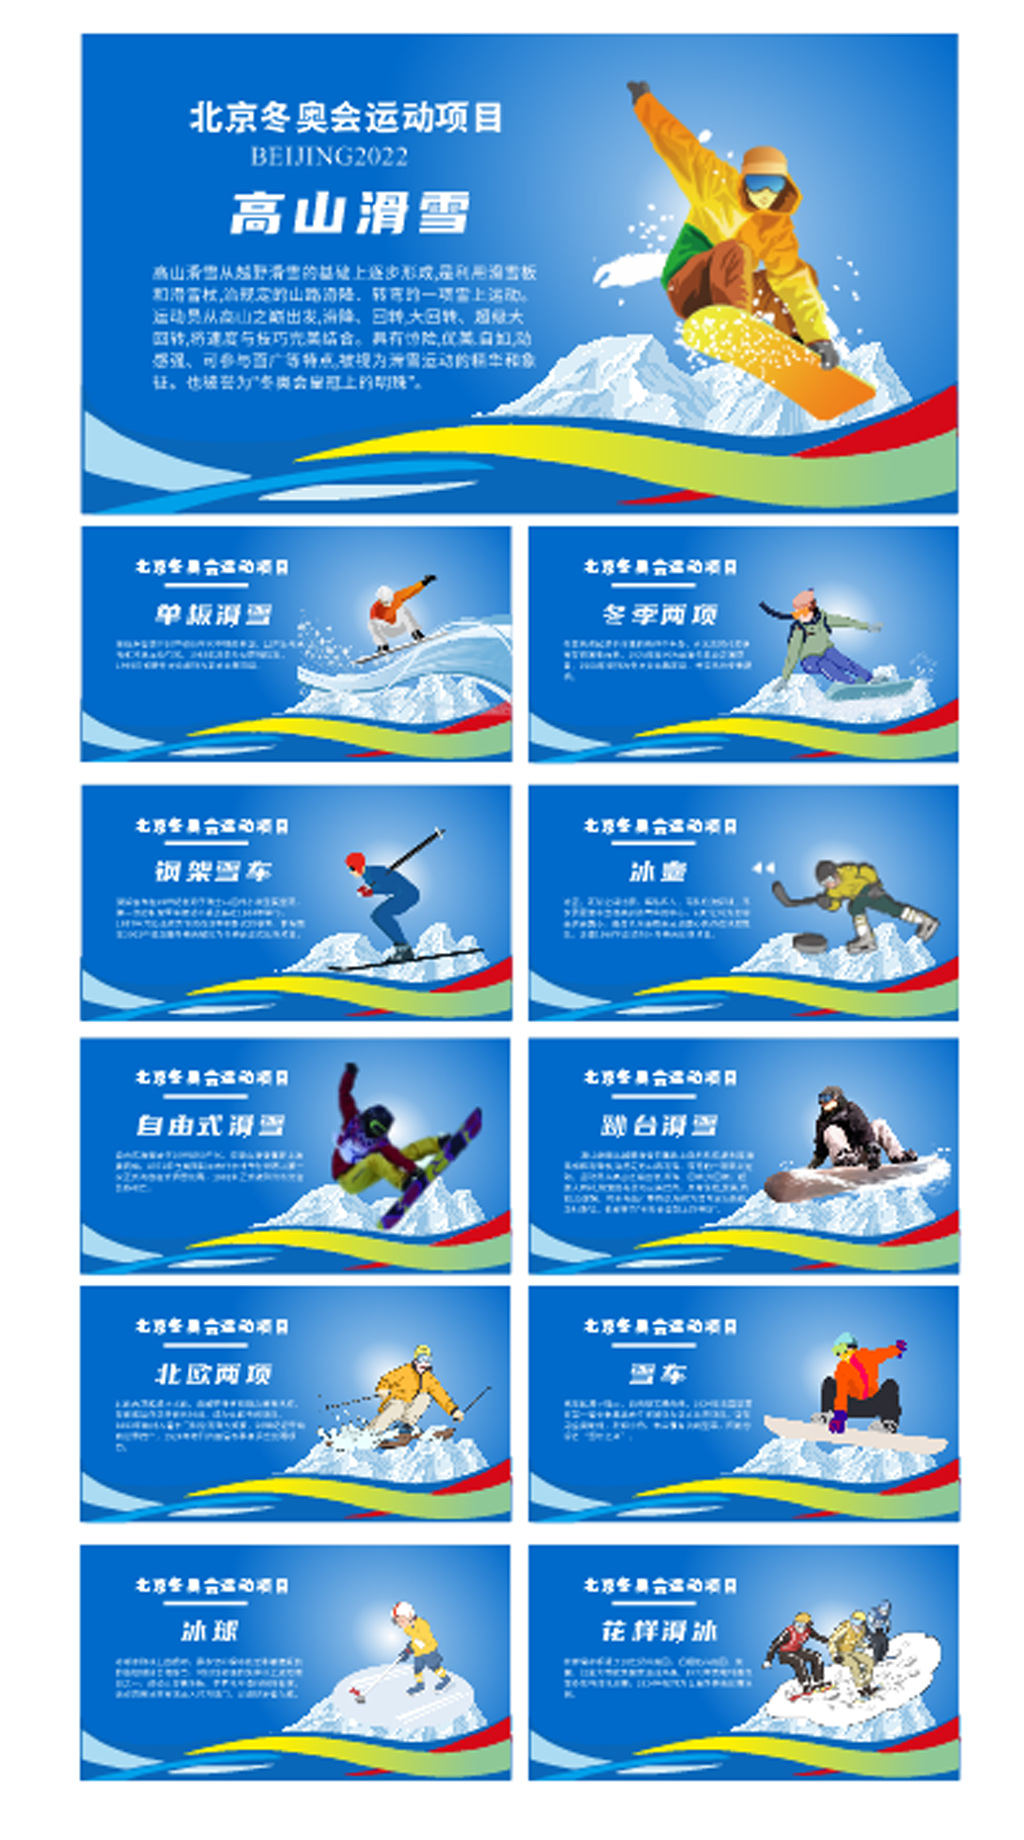 2022年冬奥会知识展板图片